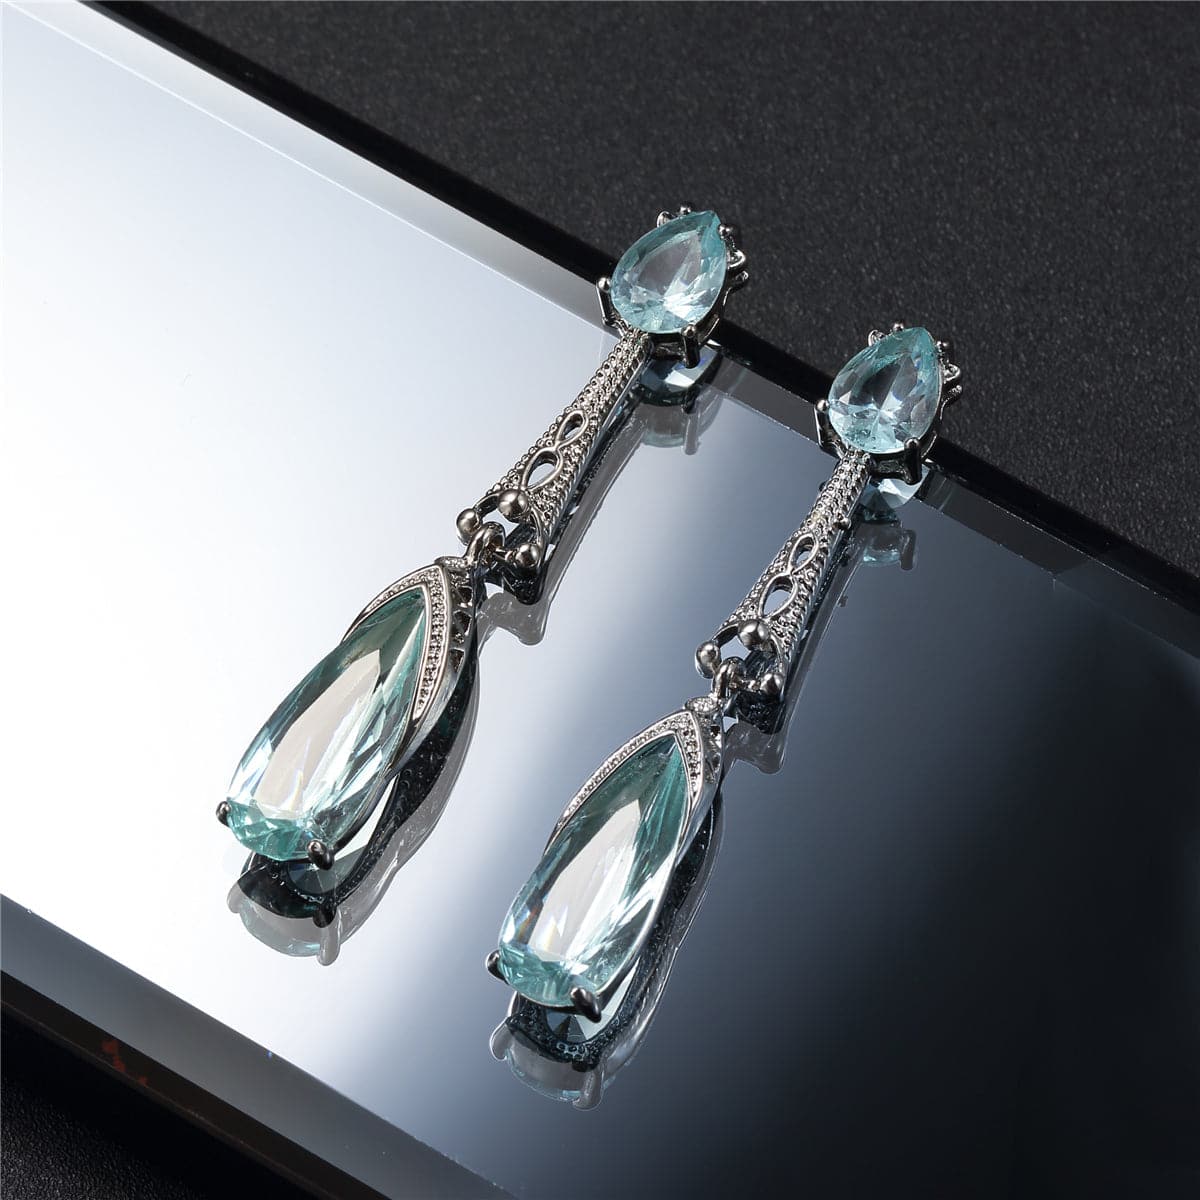 Sea Blue Crystal & Silver-Plated Teardrop Earrings